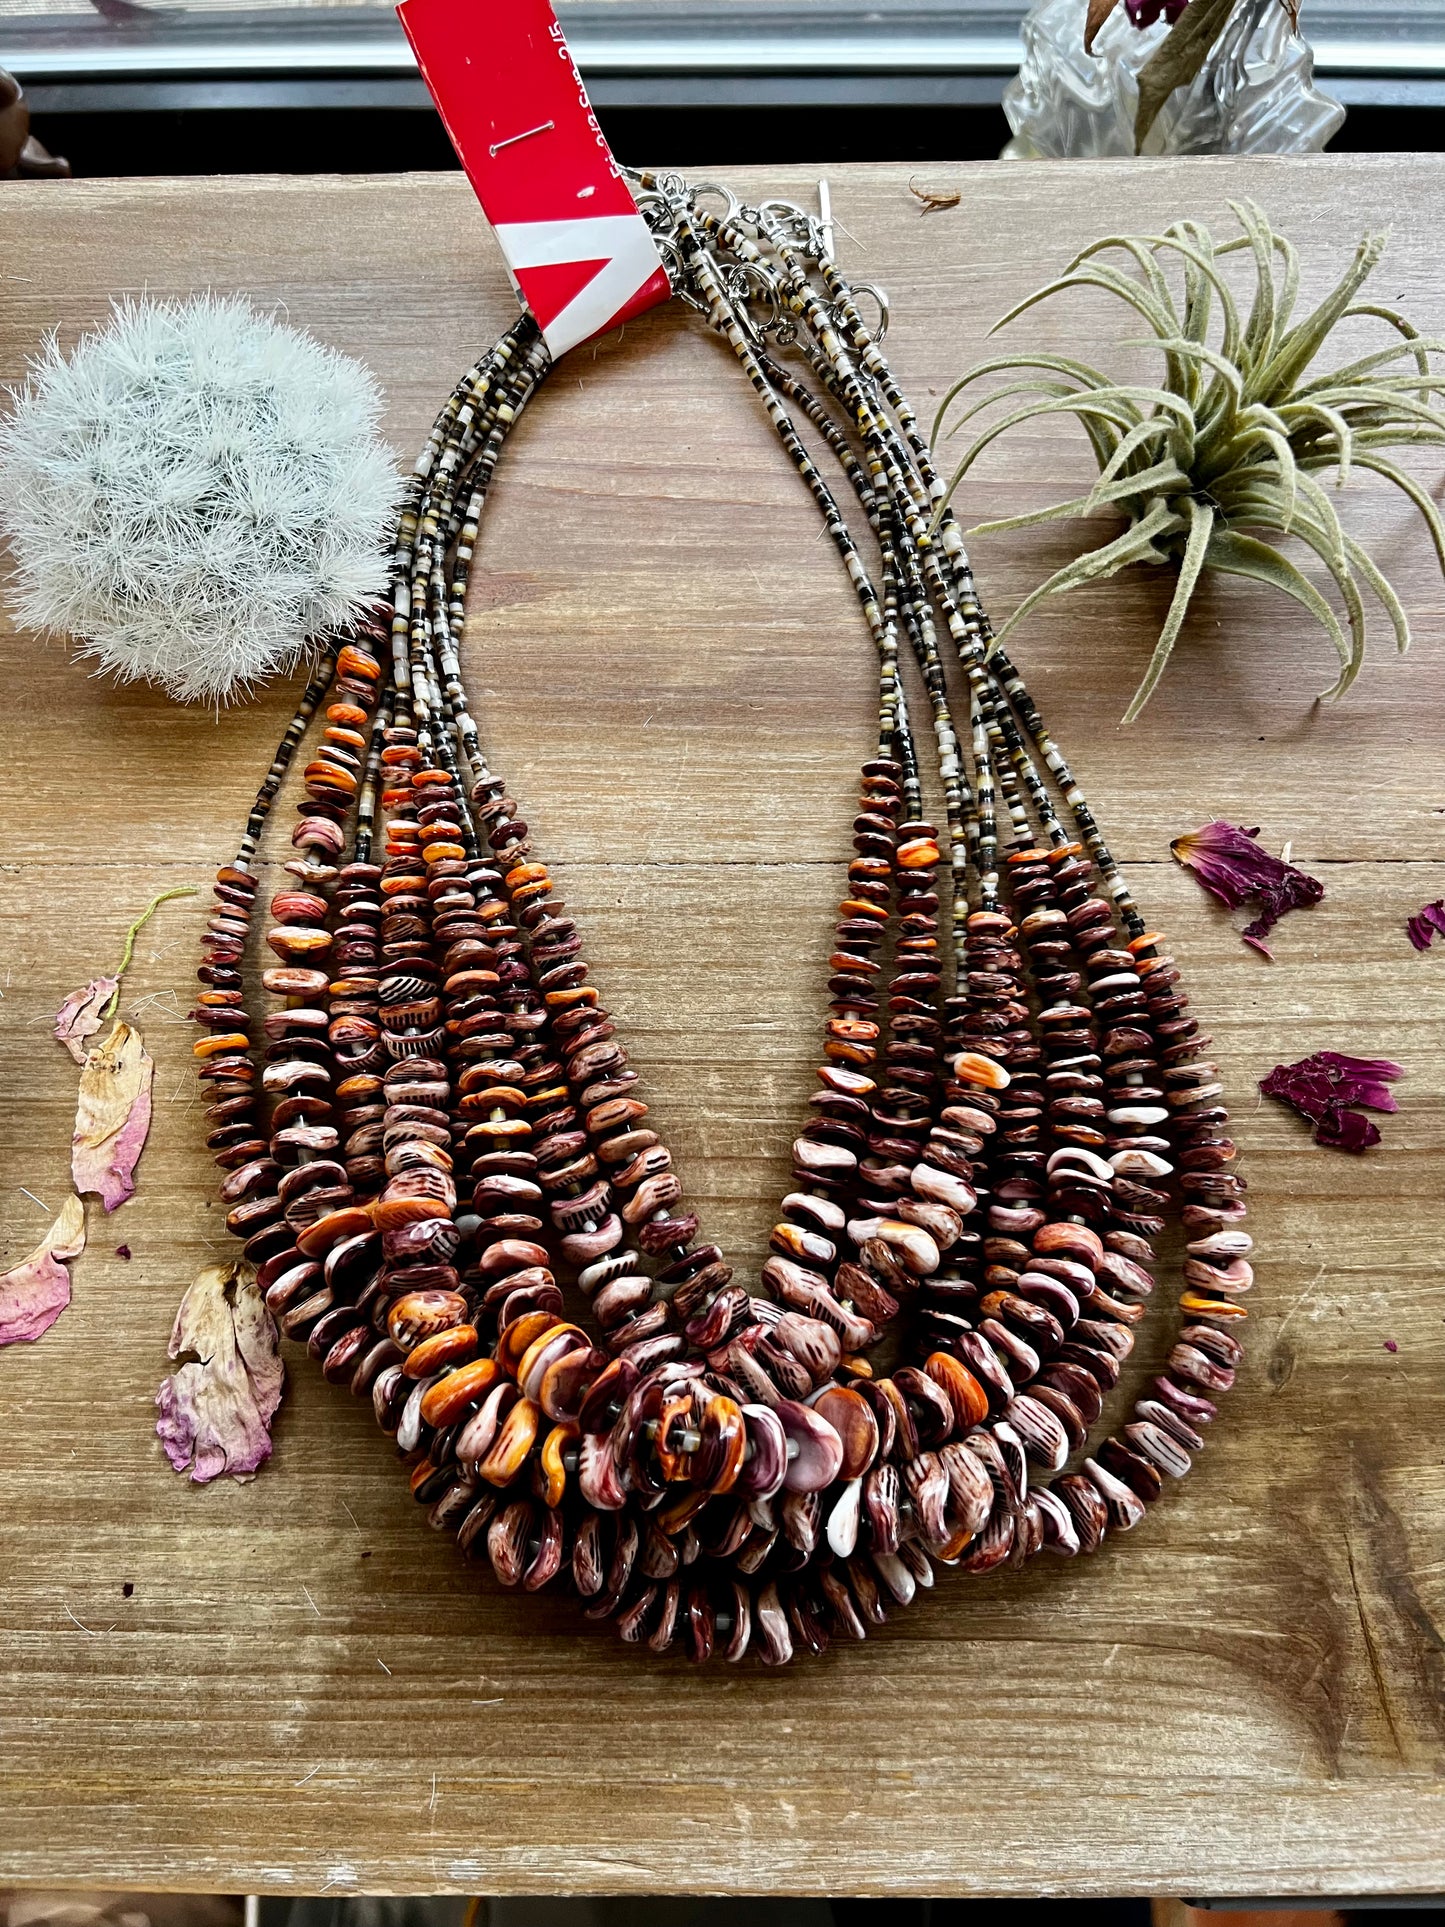 Polish purple spiny oyster necklace